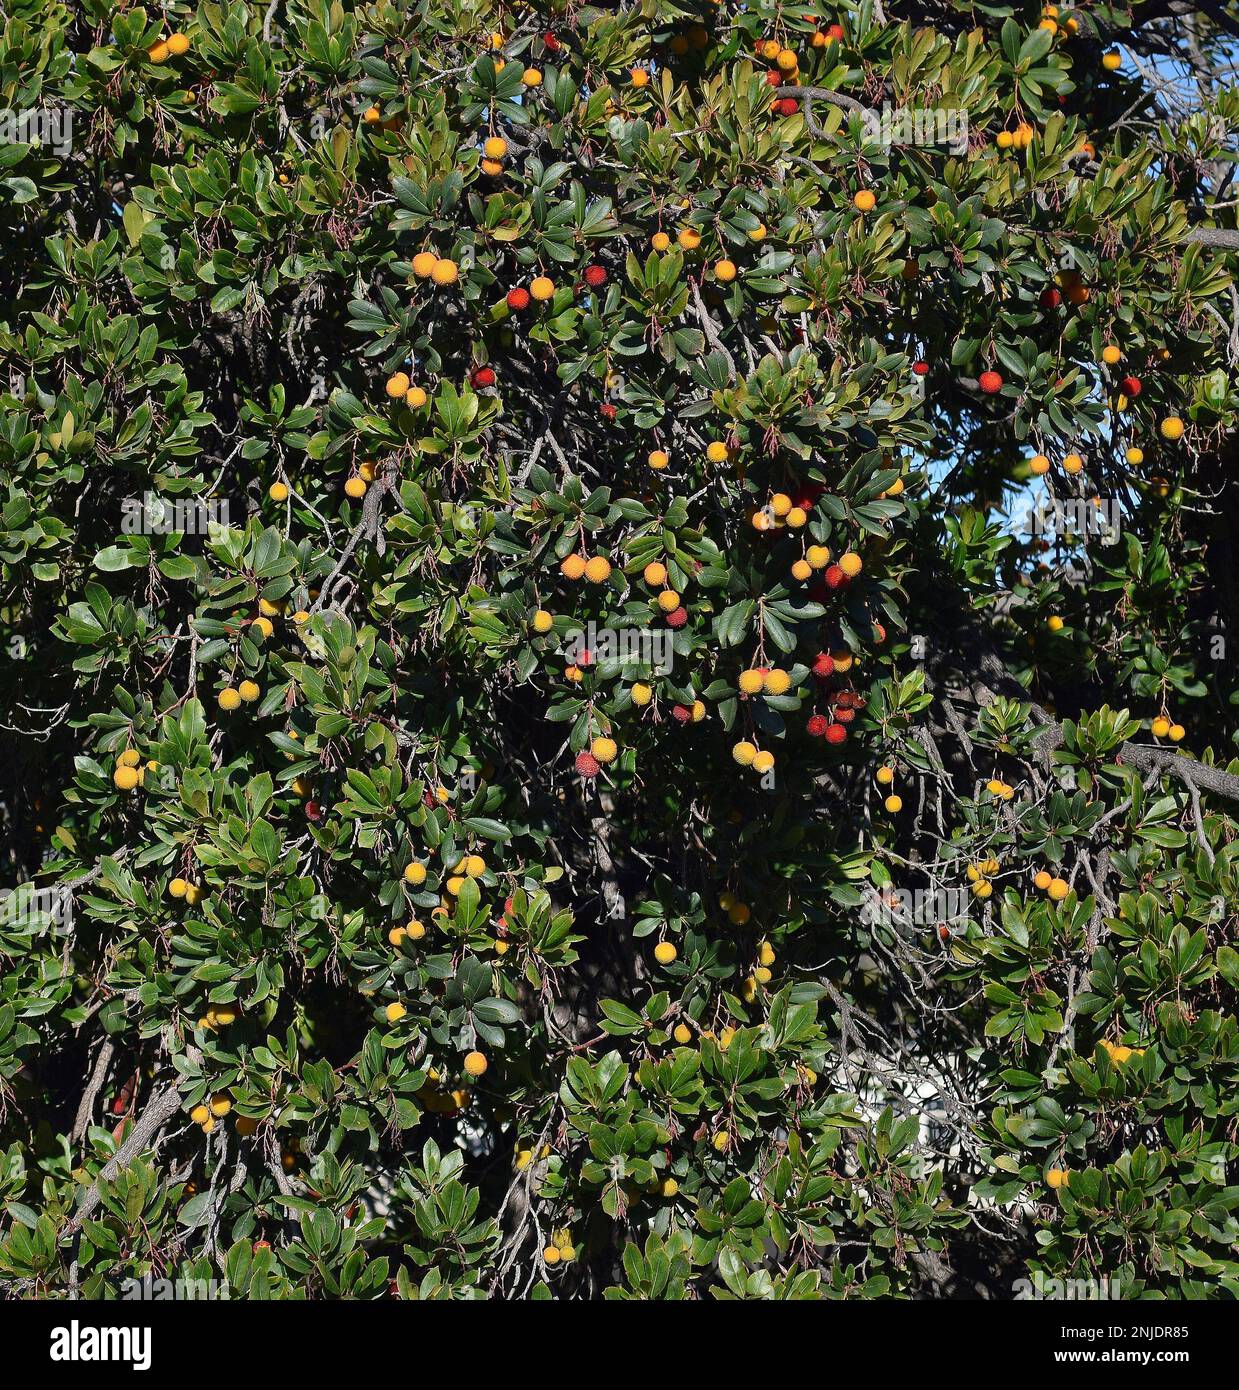 Fruta roja y naranja colgando de un árbol a lo largo de Alameda Creek, California Foto de stock